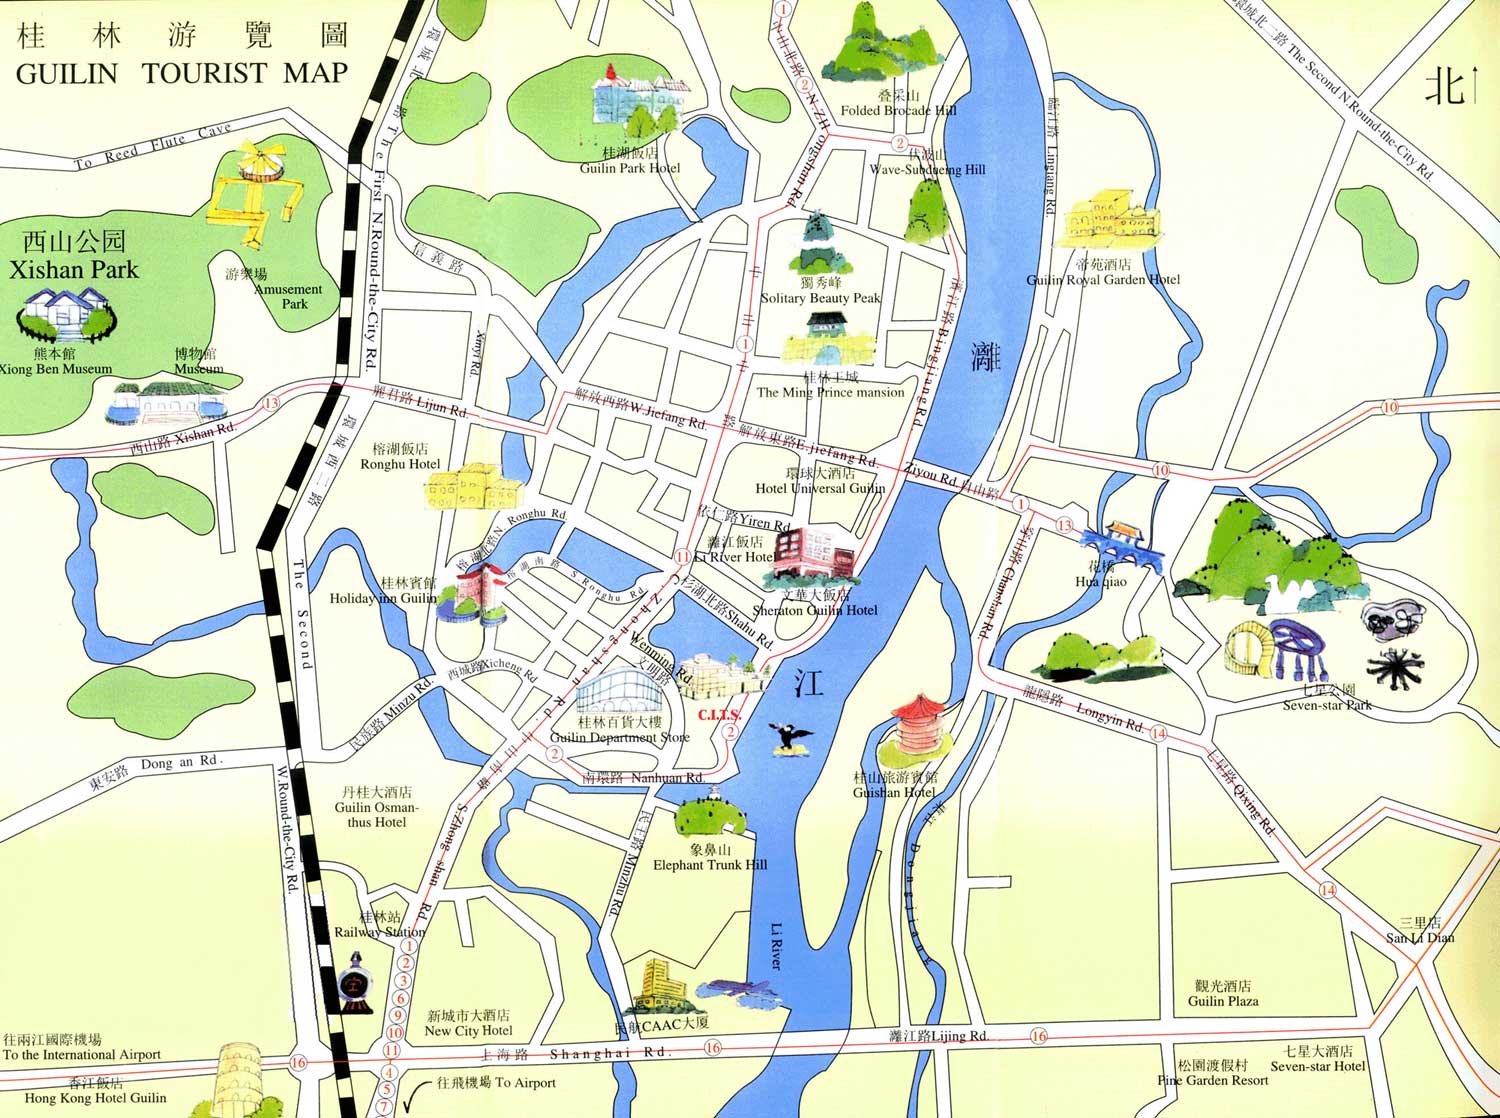 Mappa della città di Guilin per turisti